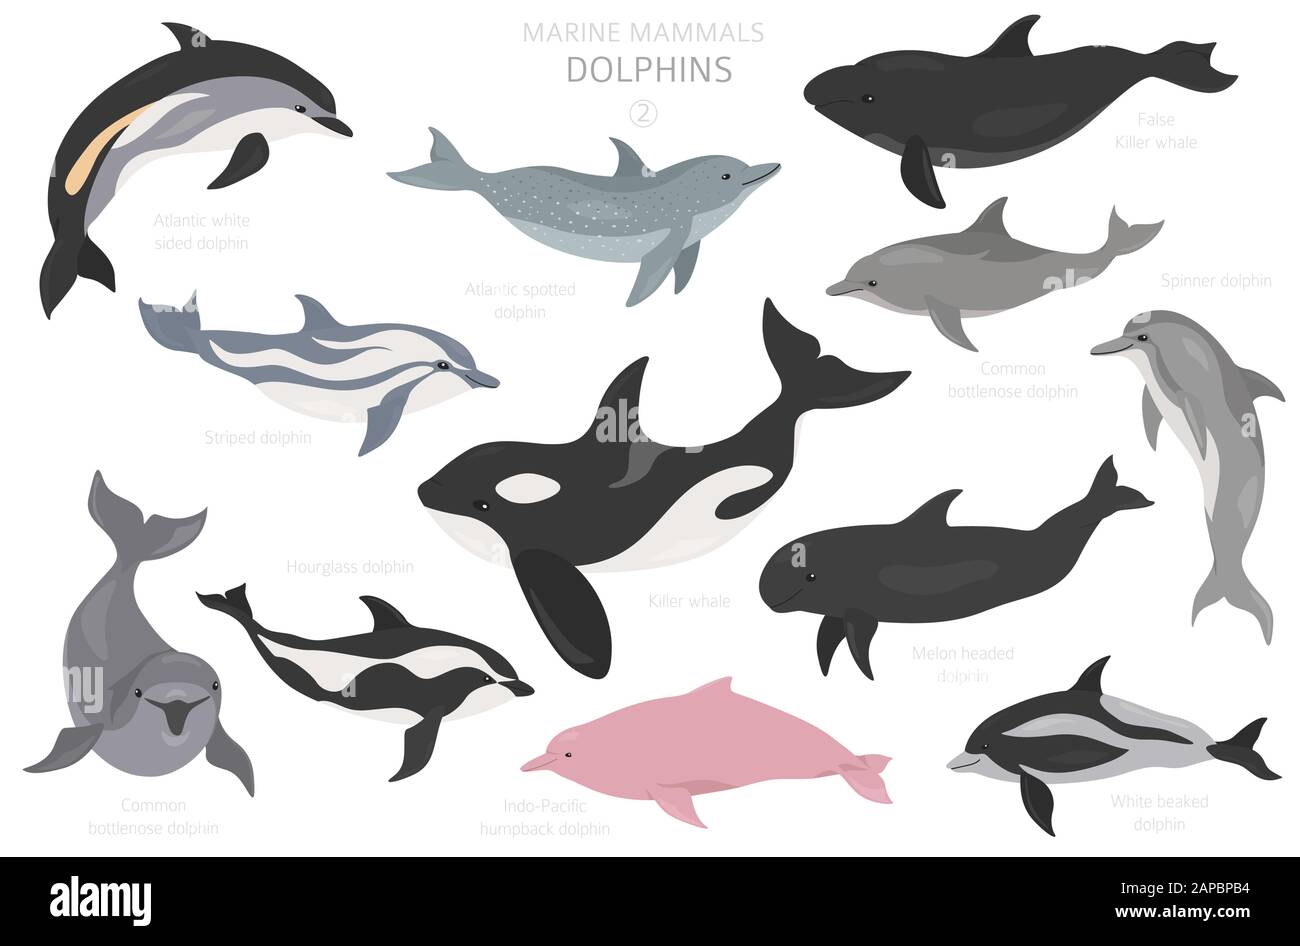 Delfines establecidos. Colección de mamíferos marinos. Diseño de dibujos animados de estilo plano. Ilustración vectorial Ilustración del Vector